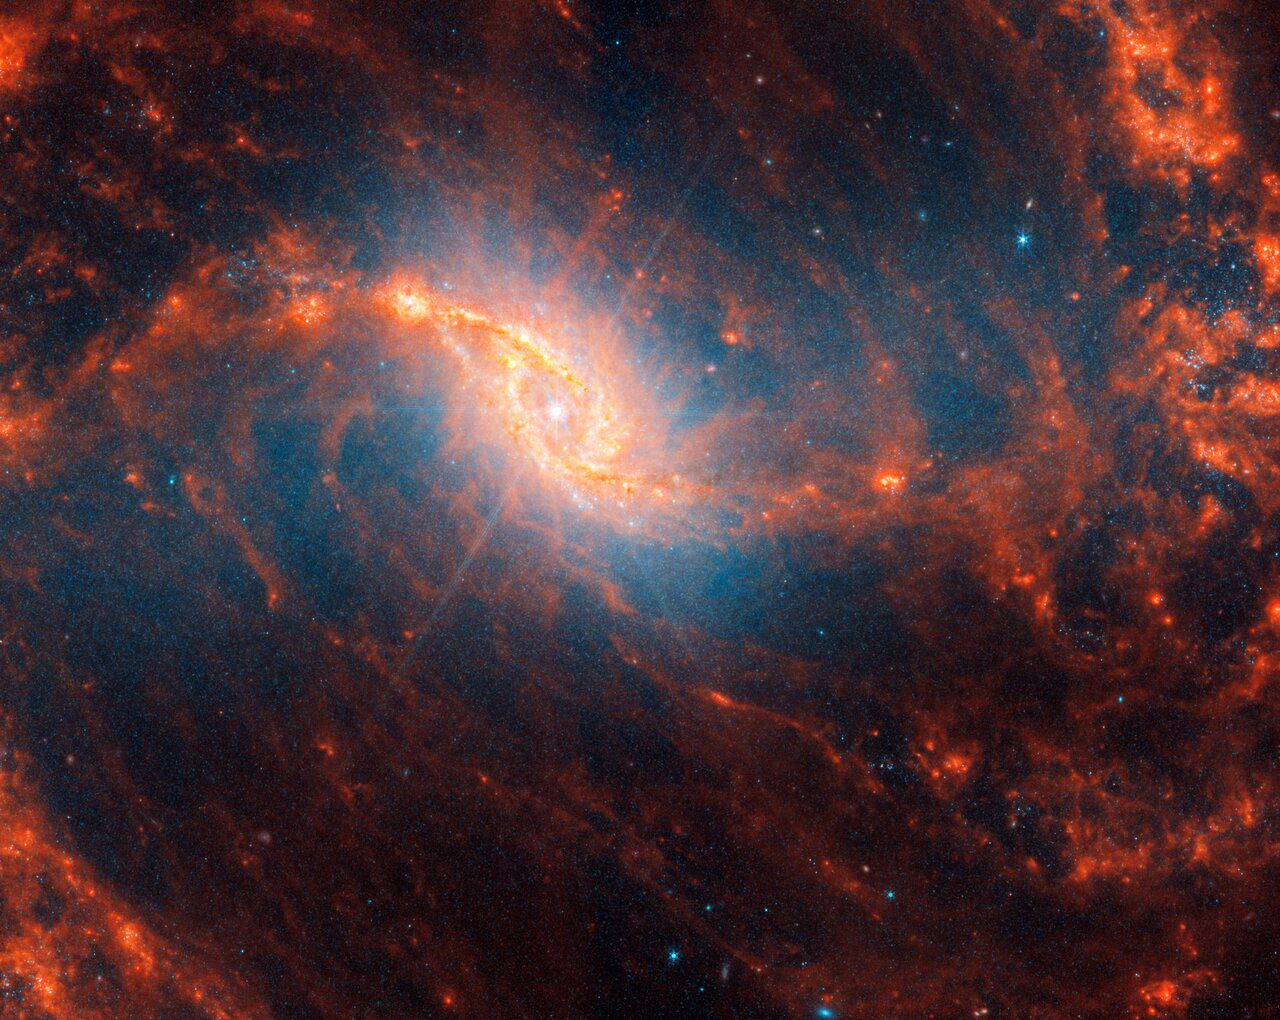 Galaxia espiral NGC 1365, ubicada a 56 millones de años luz en la constelación de Fornax.